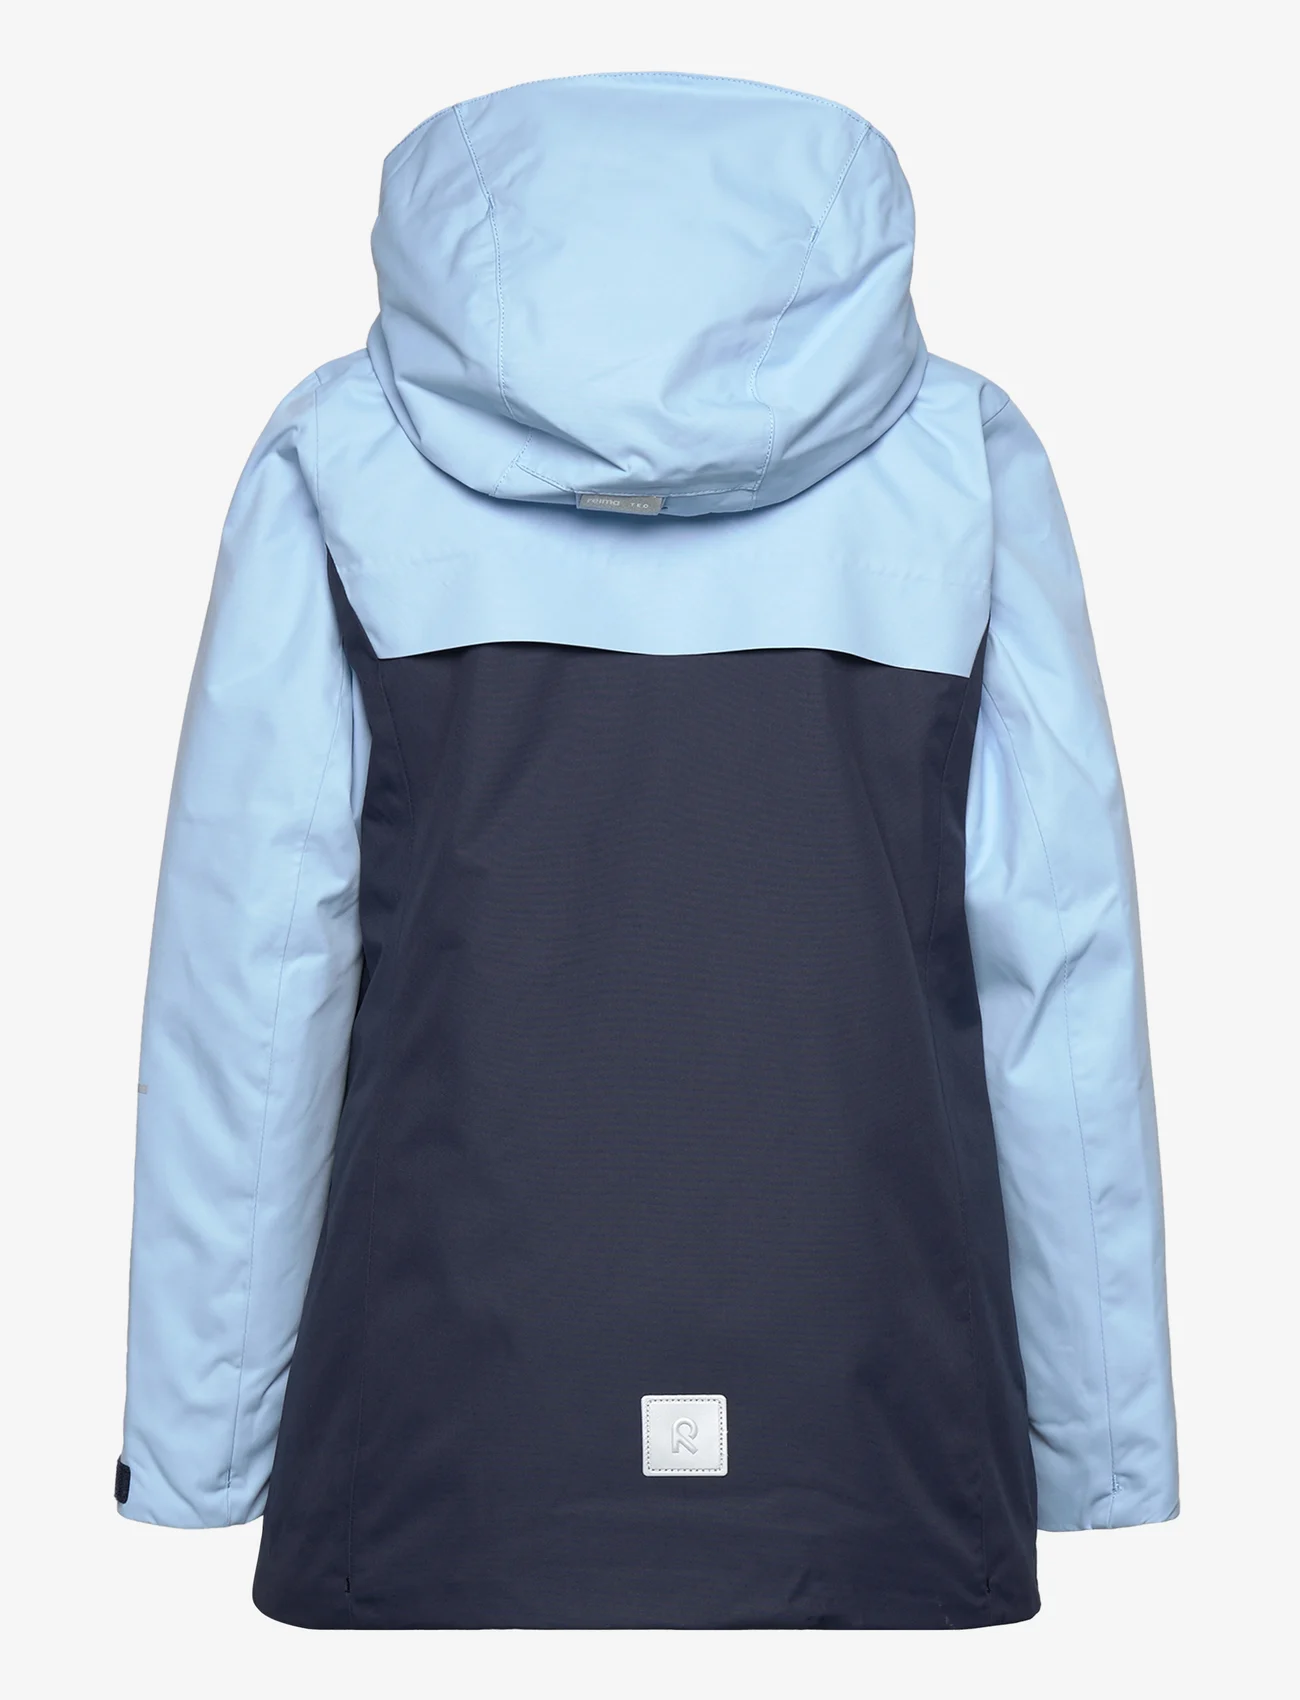 Reima - Reimatec winter jacket, Hepola - winterjassen - navy - 1